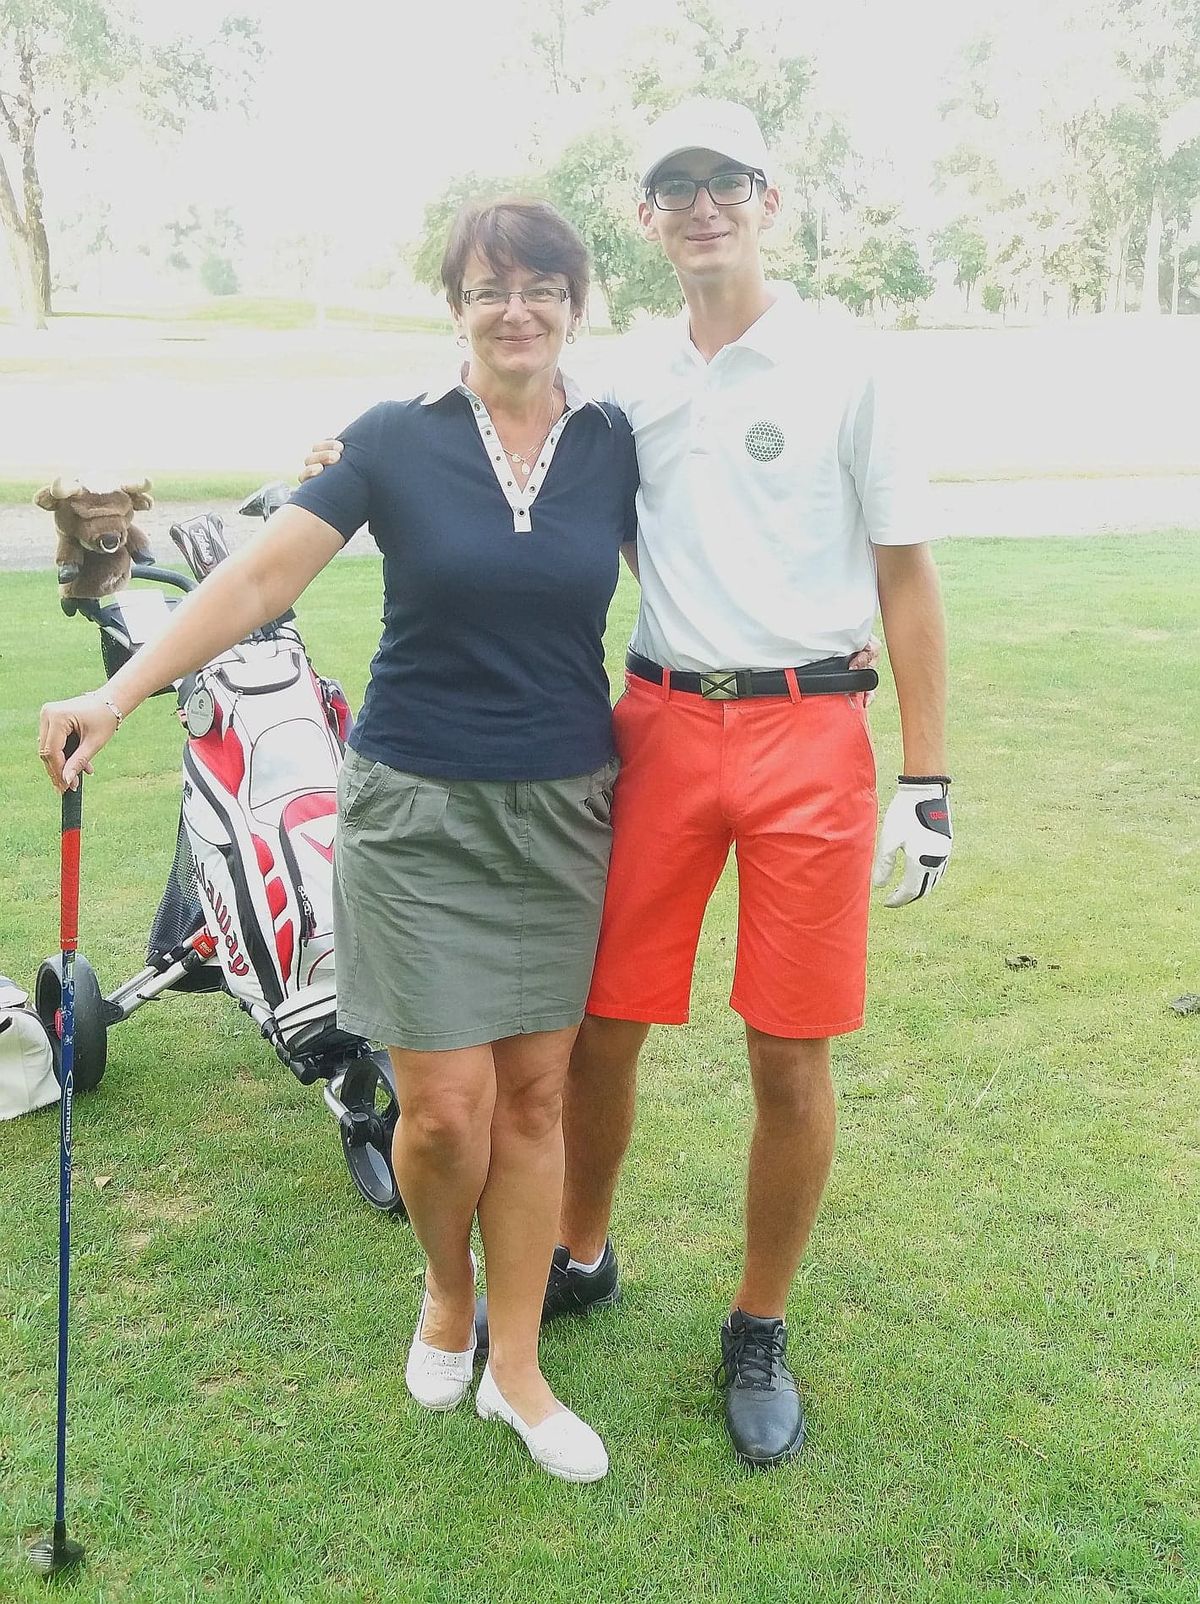 Nasze życie kręci się wokół golfa — przyznaje mama Krzysztofa Sosnowskiego